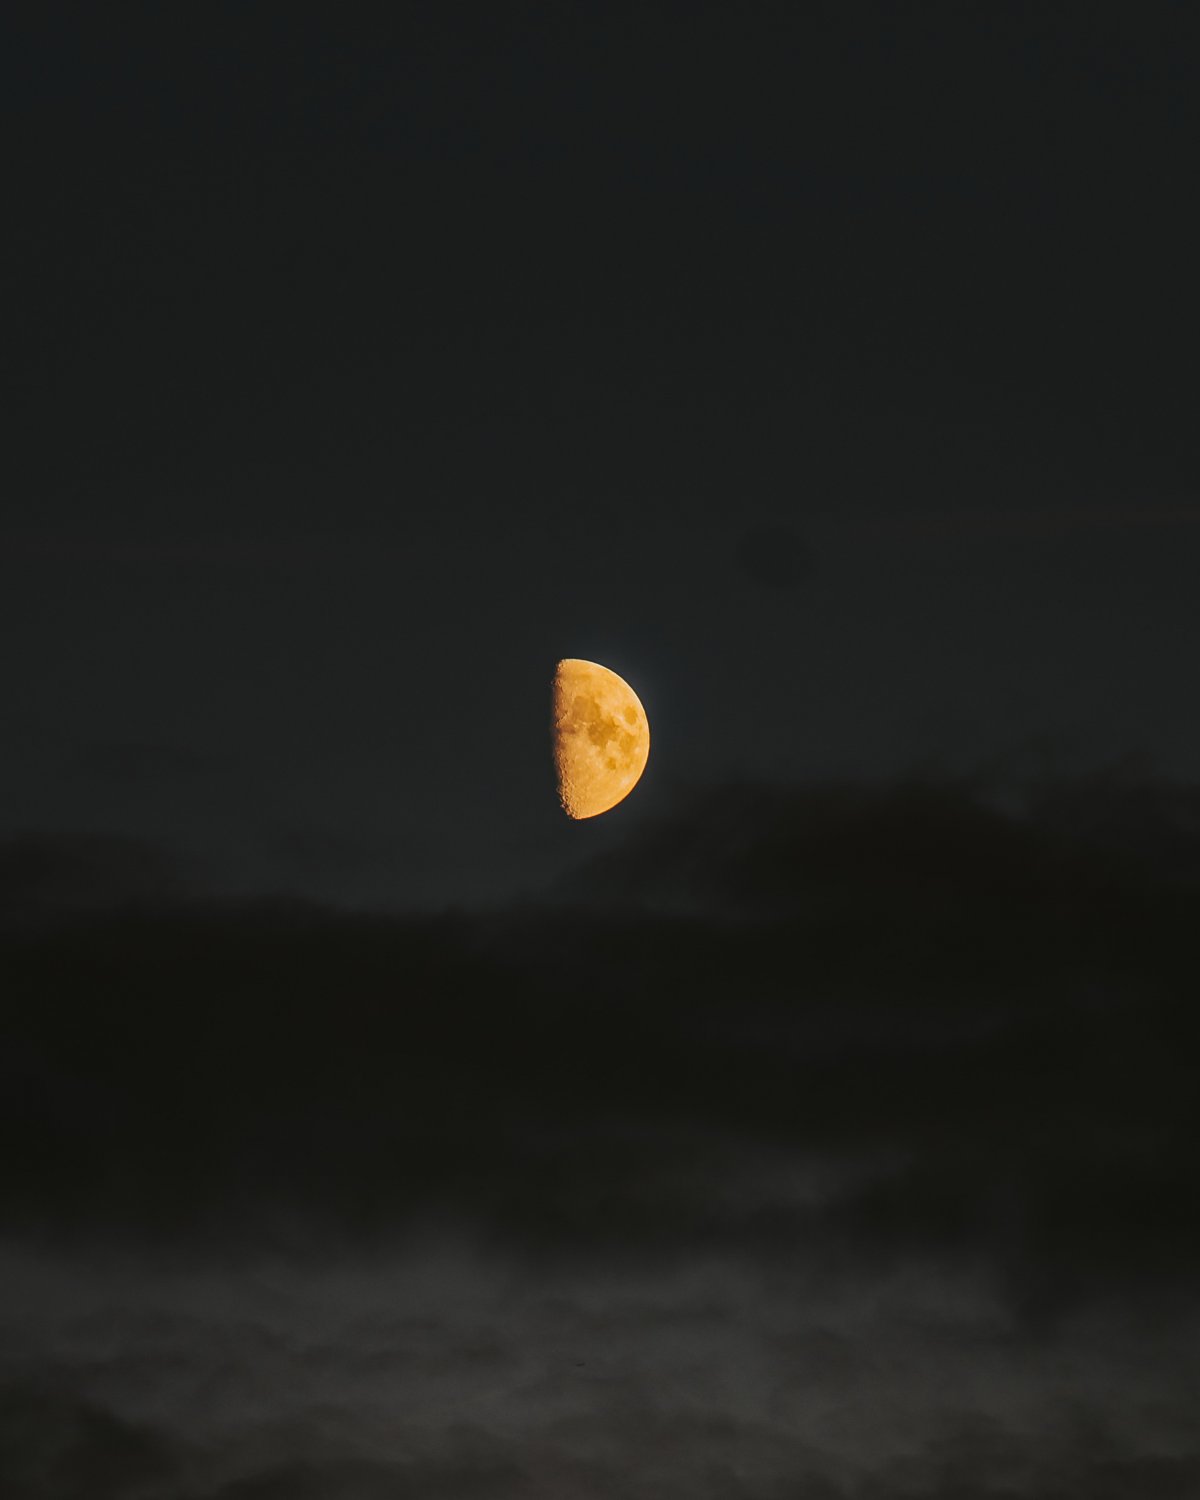 Half moon picture in dark night sky